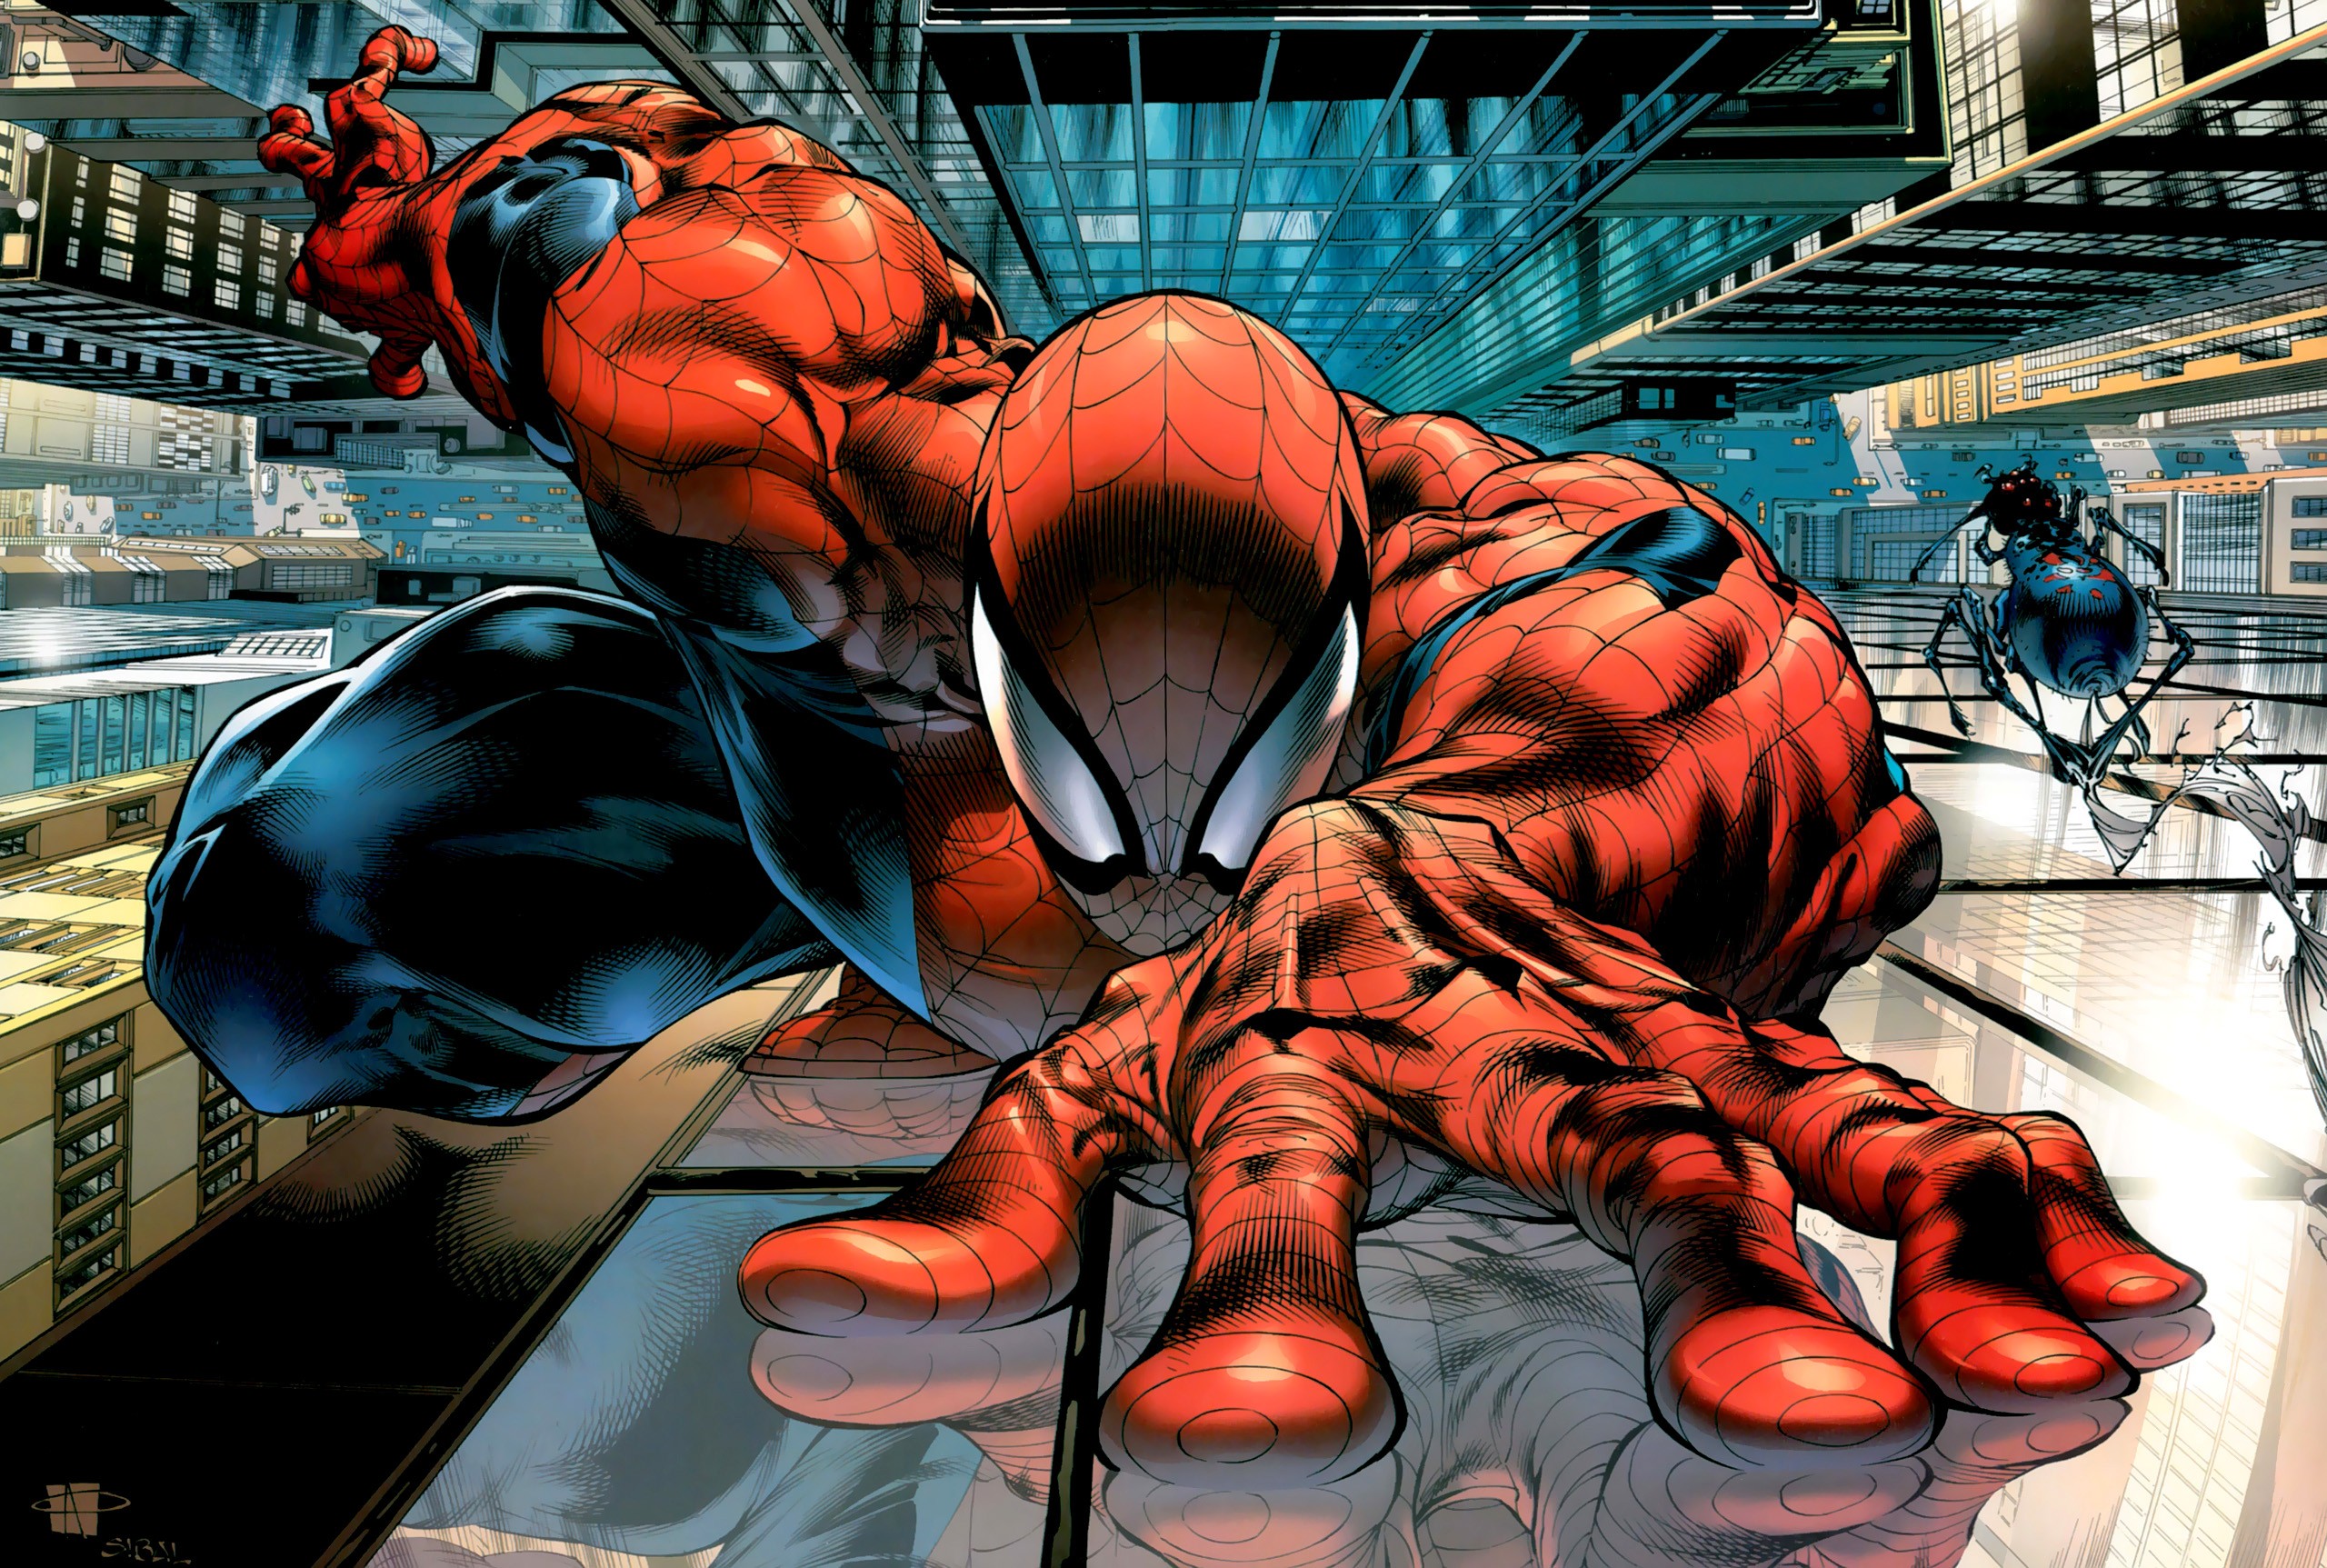 General 2560x1725 Spider-Man Marvel Comics superhero comic art comics